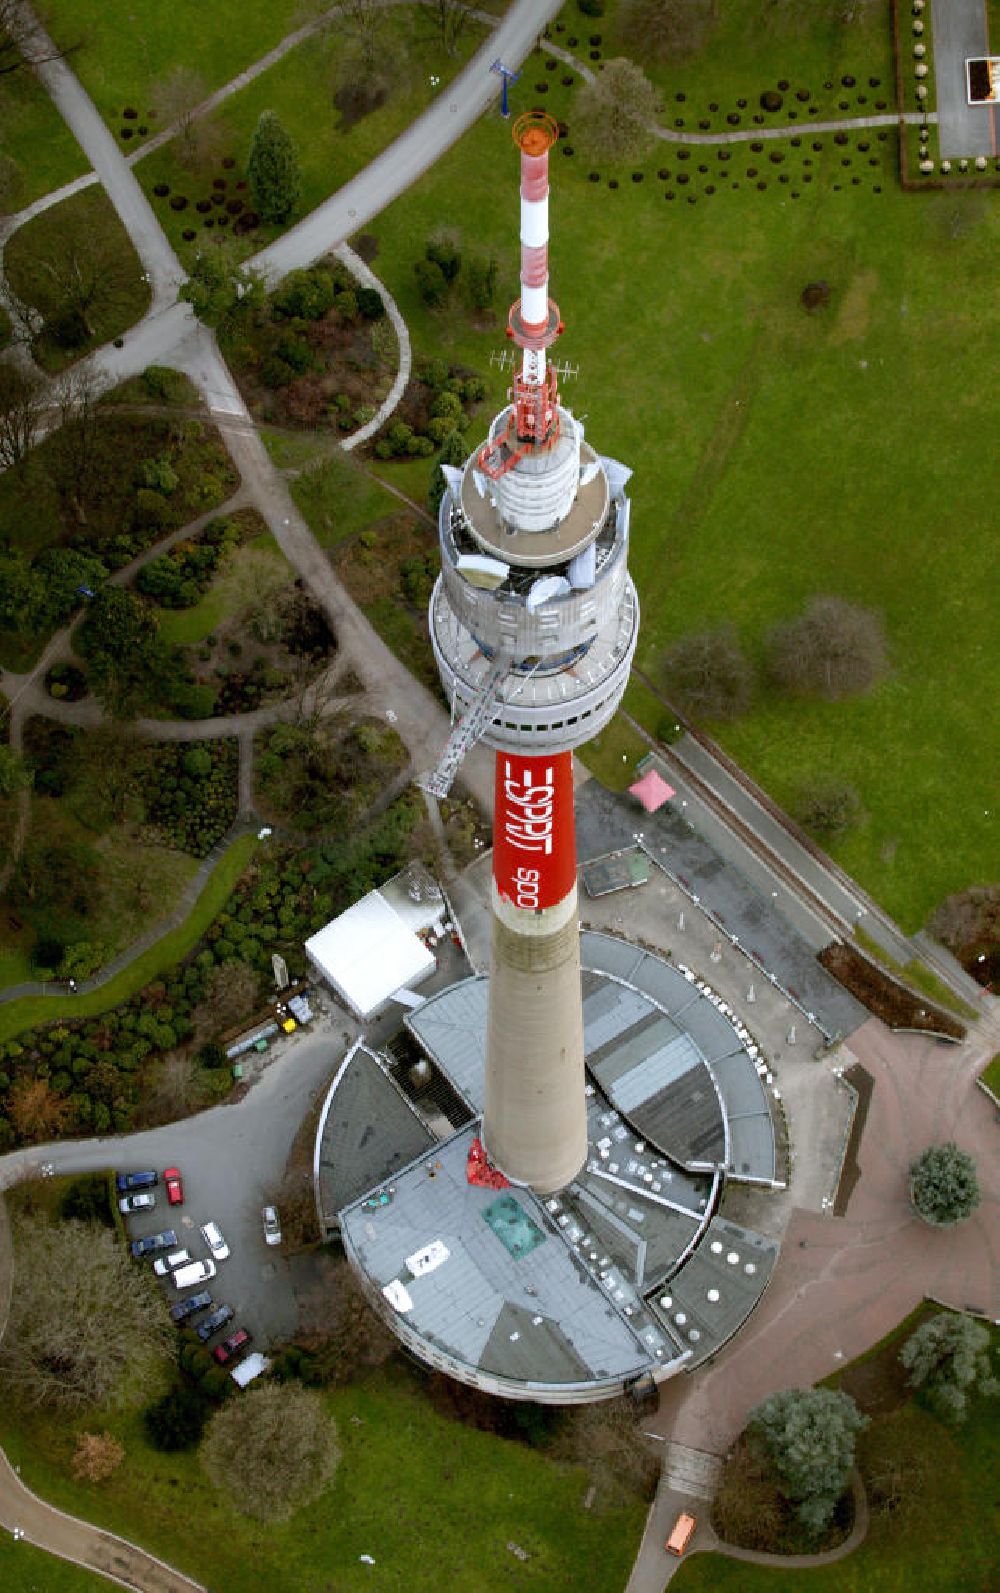 Florianturm ist ein TK-Turm und Wahrzeichen von Dortmund in